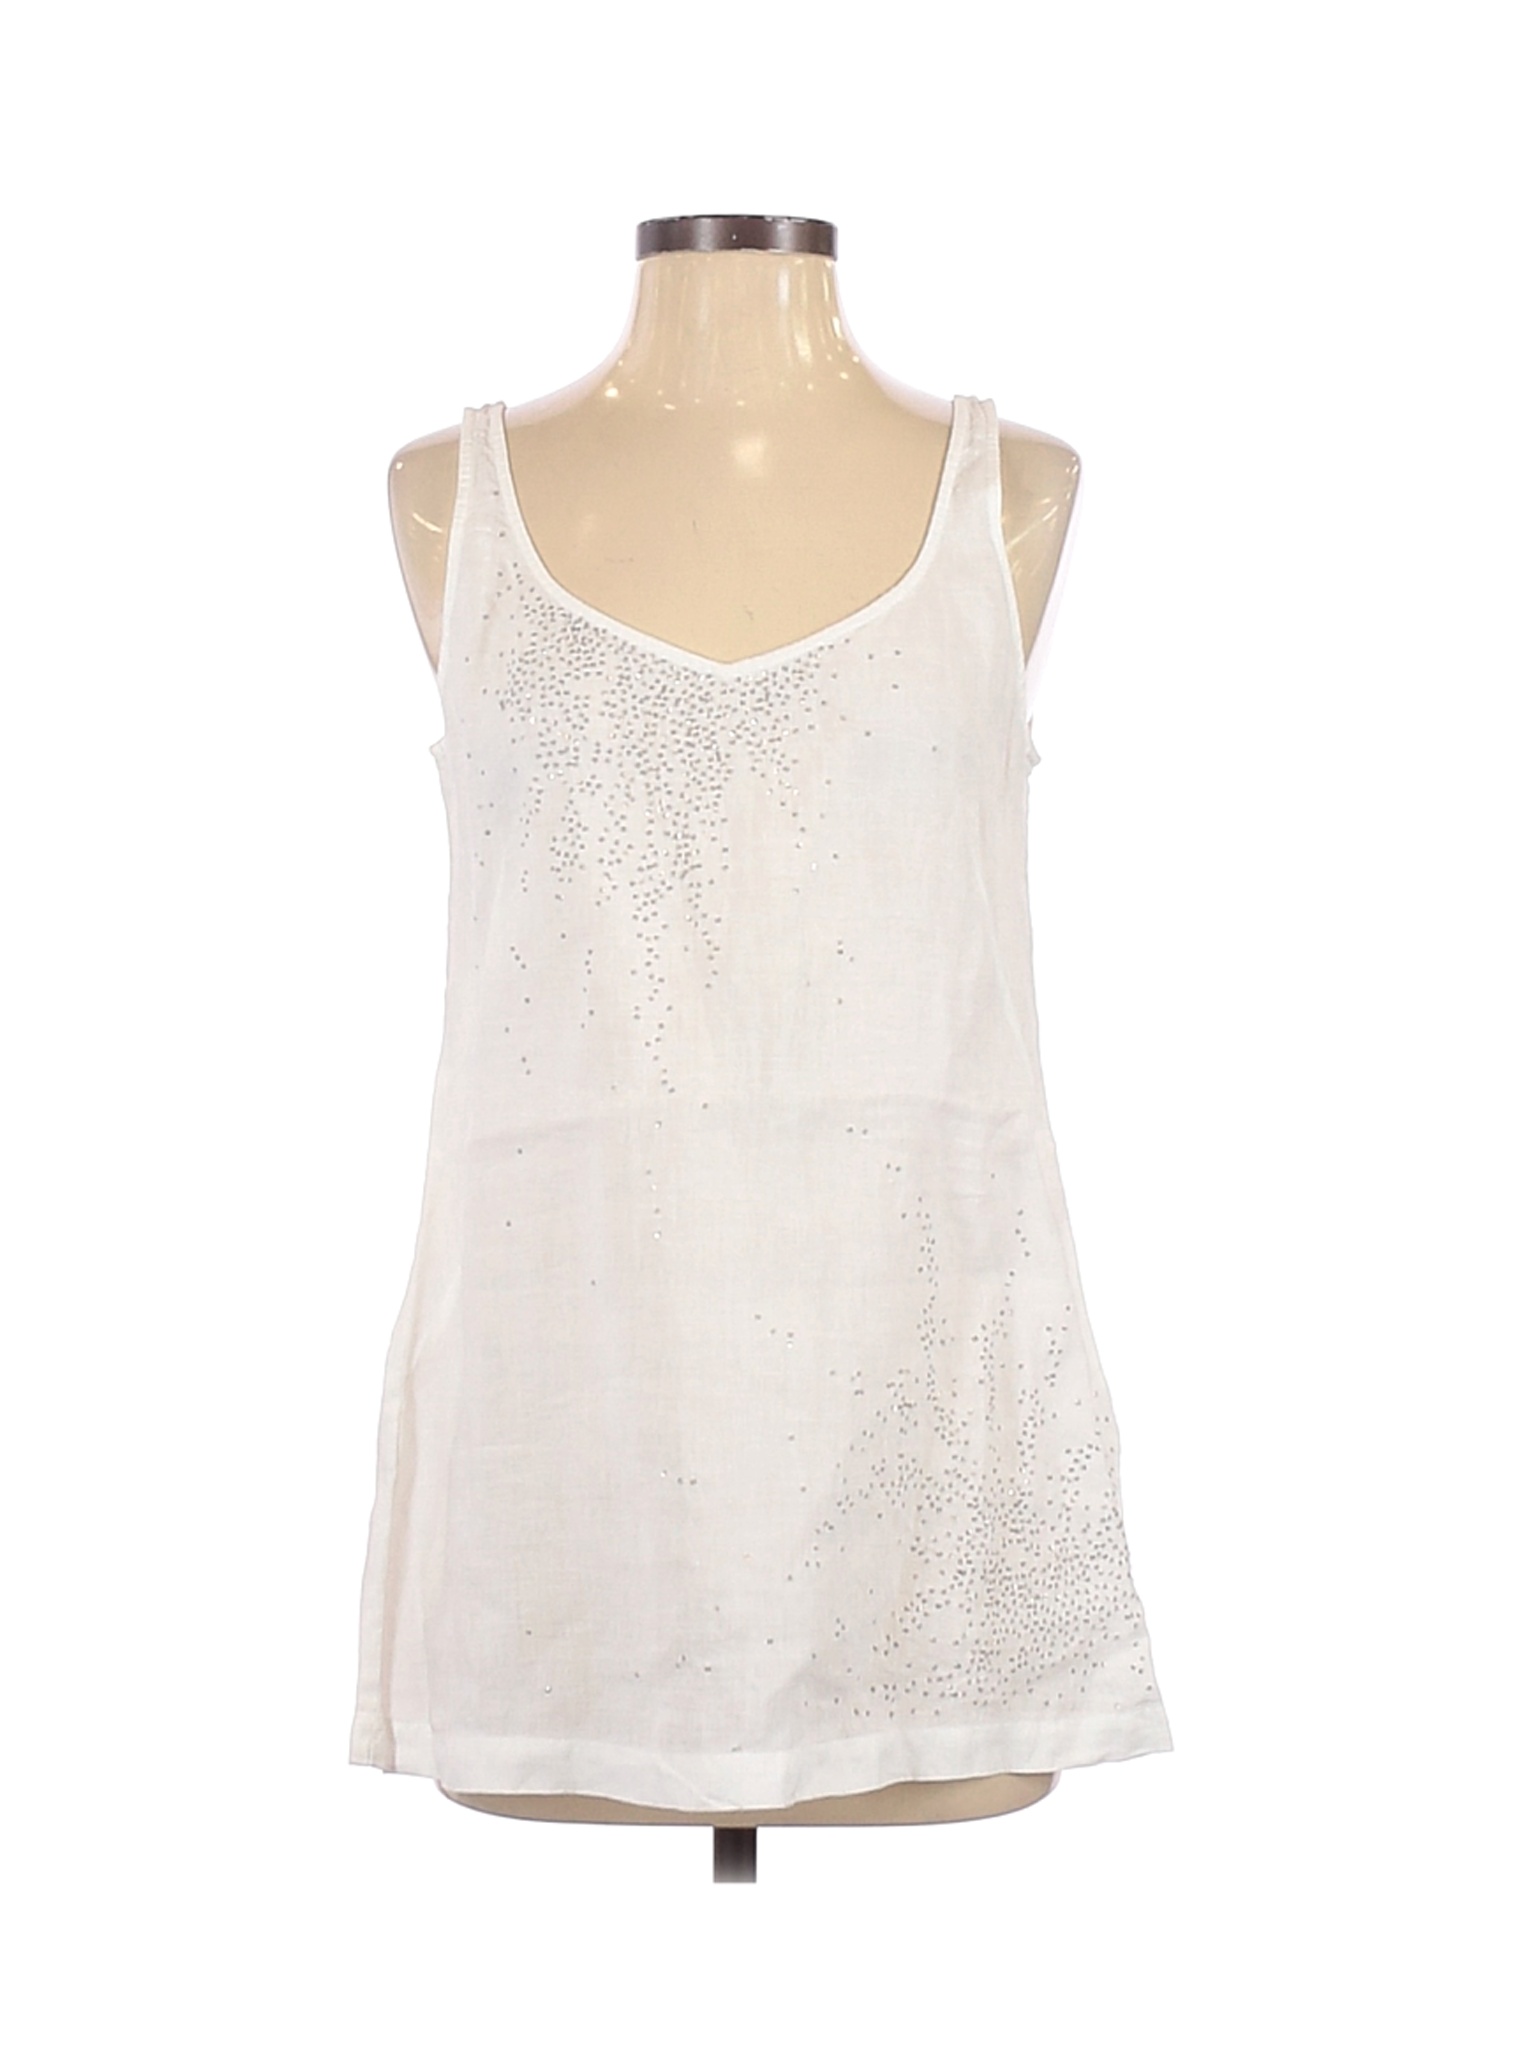 Eileen Fisher Women White Sleeveless Blouse S | eBay